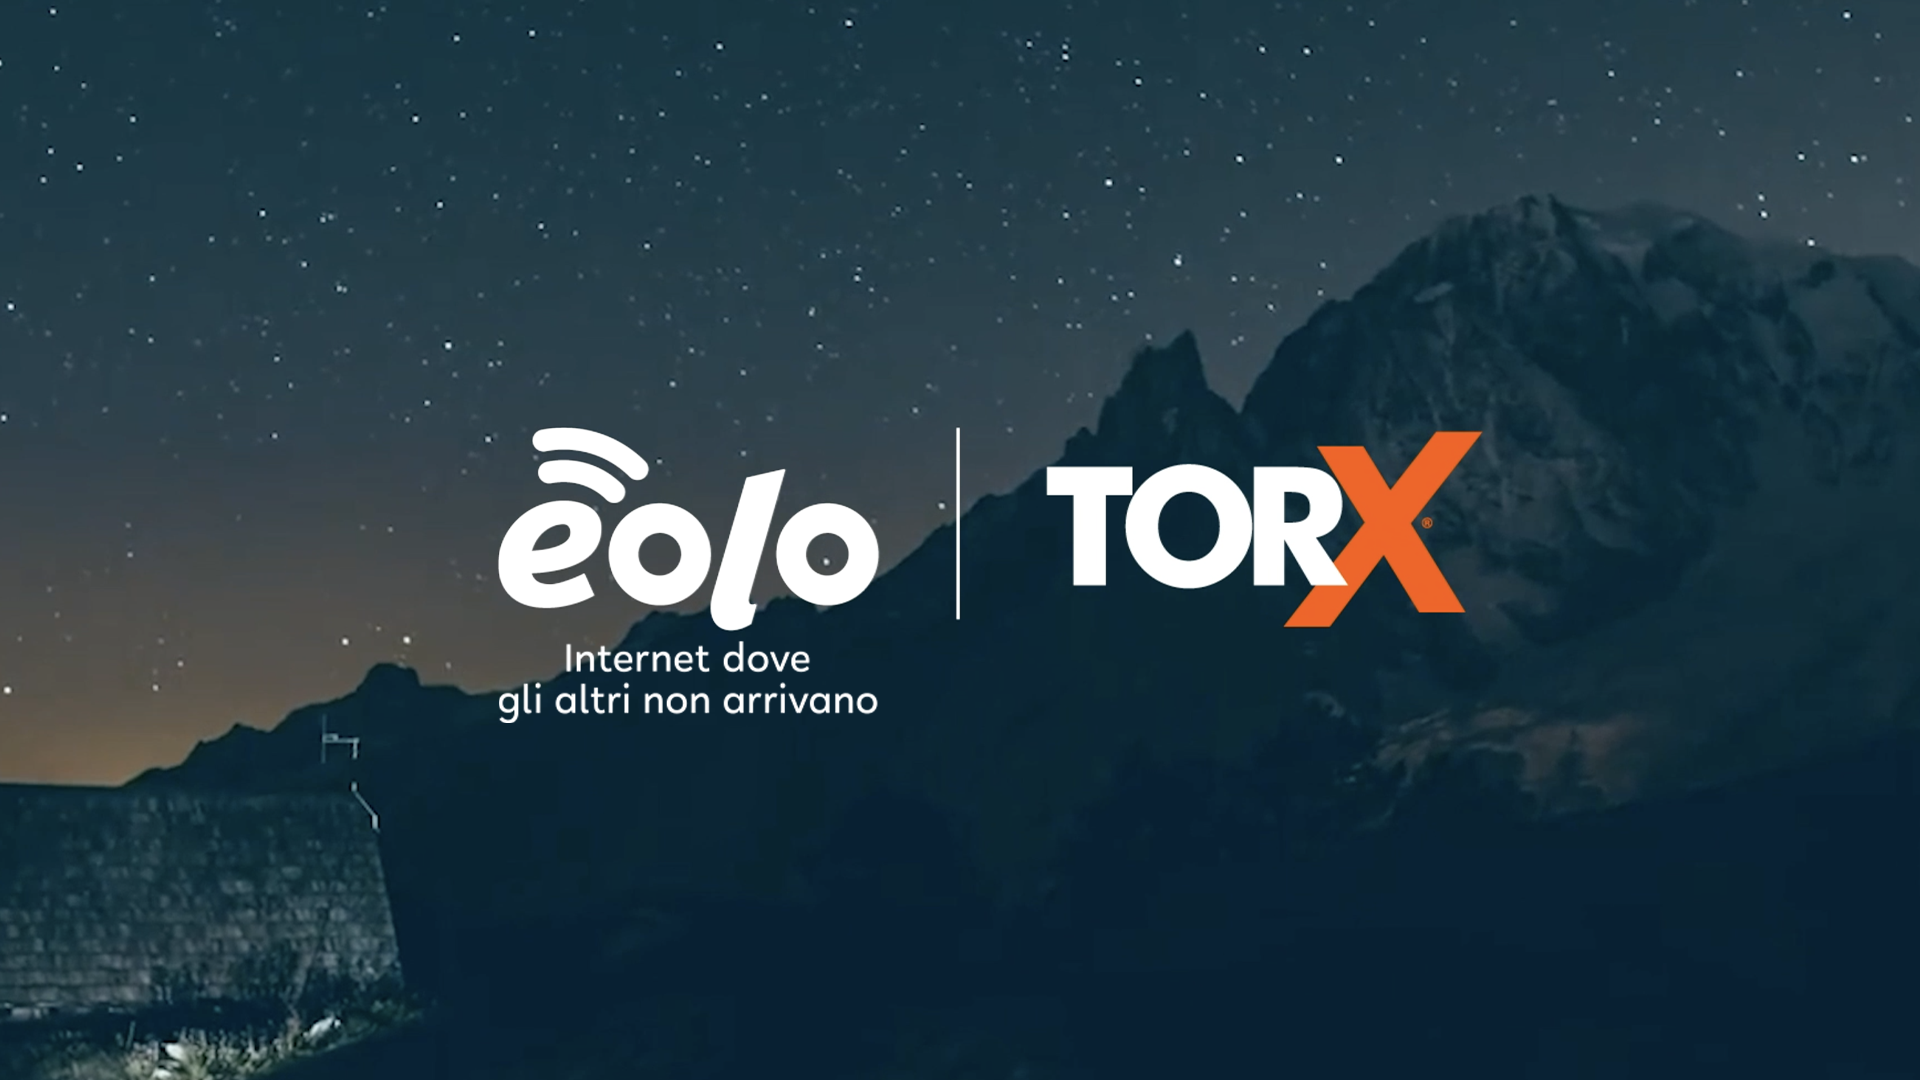 EOLO e TORX®: una sponsorship che prosegue grazie a valori e obiettivi comuni.